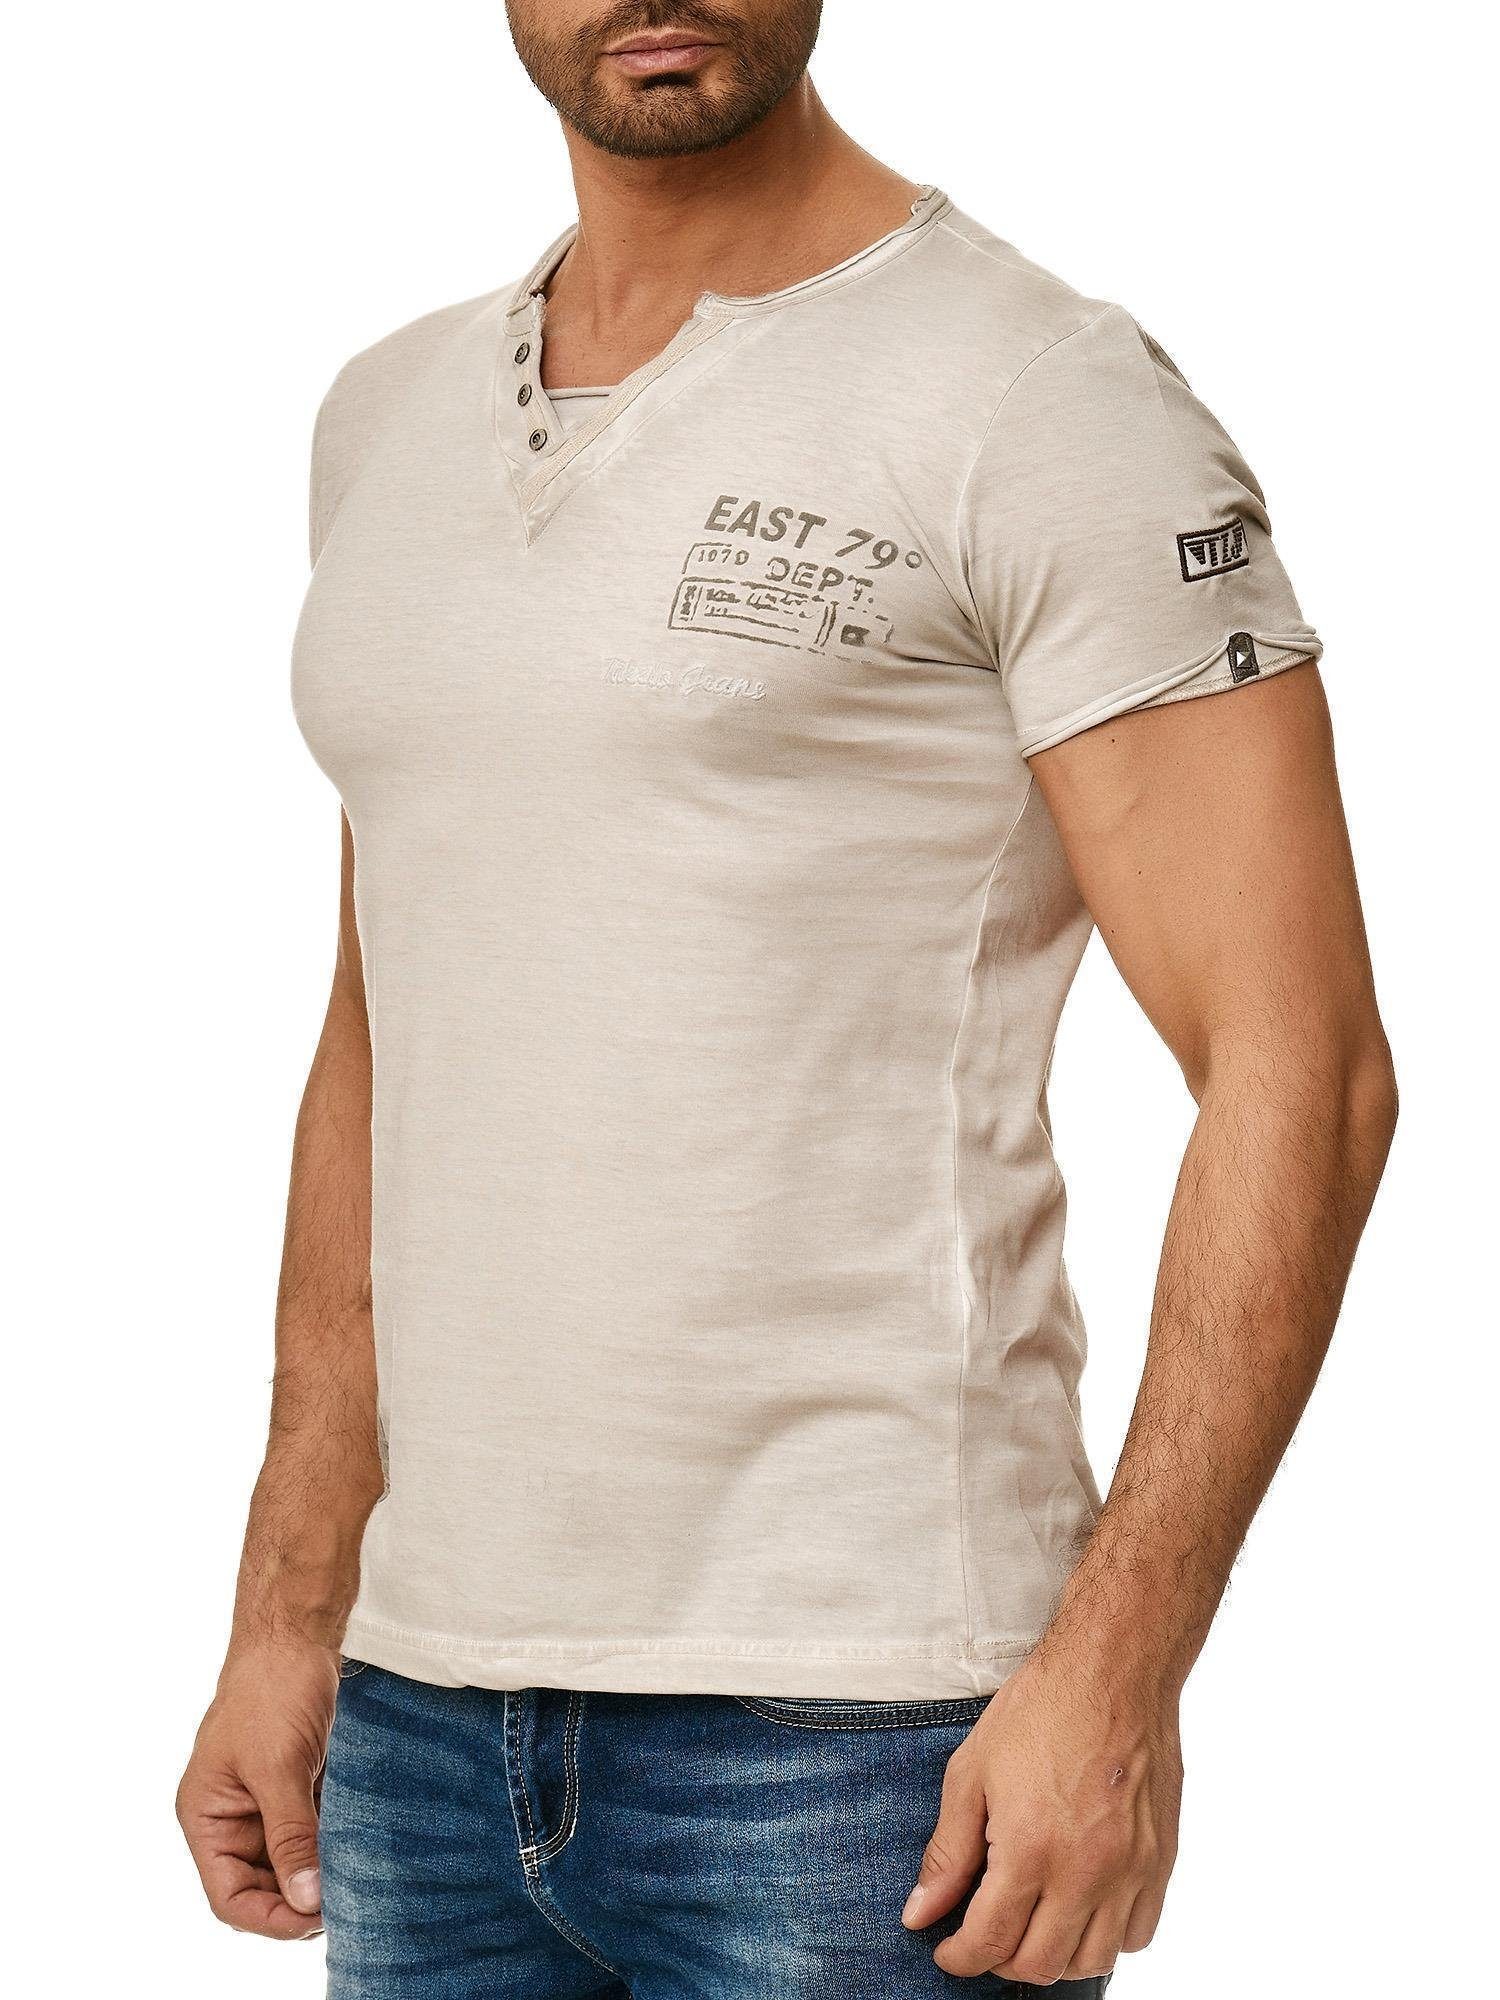 Tazzio V-Shirt 4060 außergewöhliches T-Shirt in dezentem Used Look & Ölwaschung grau